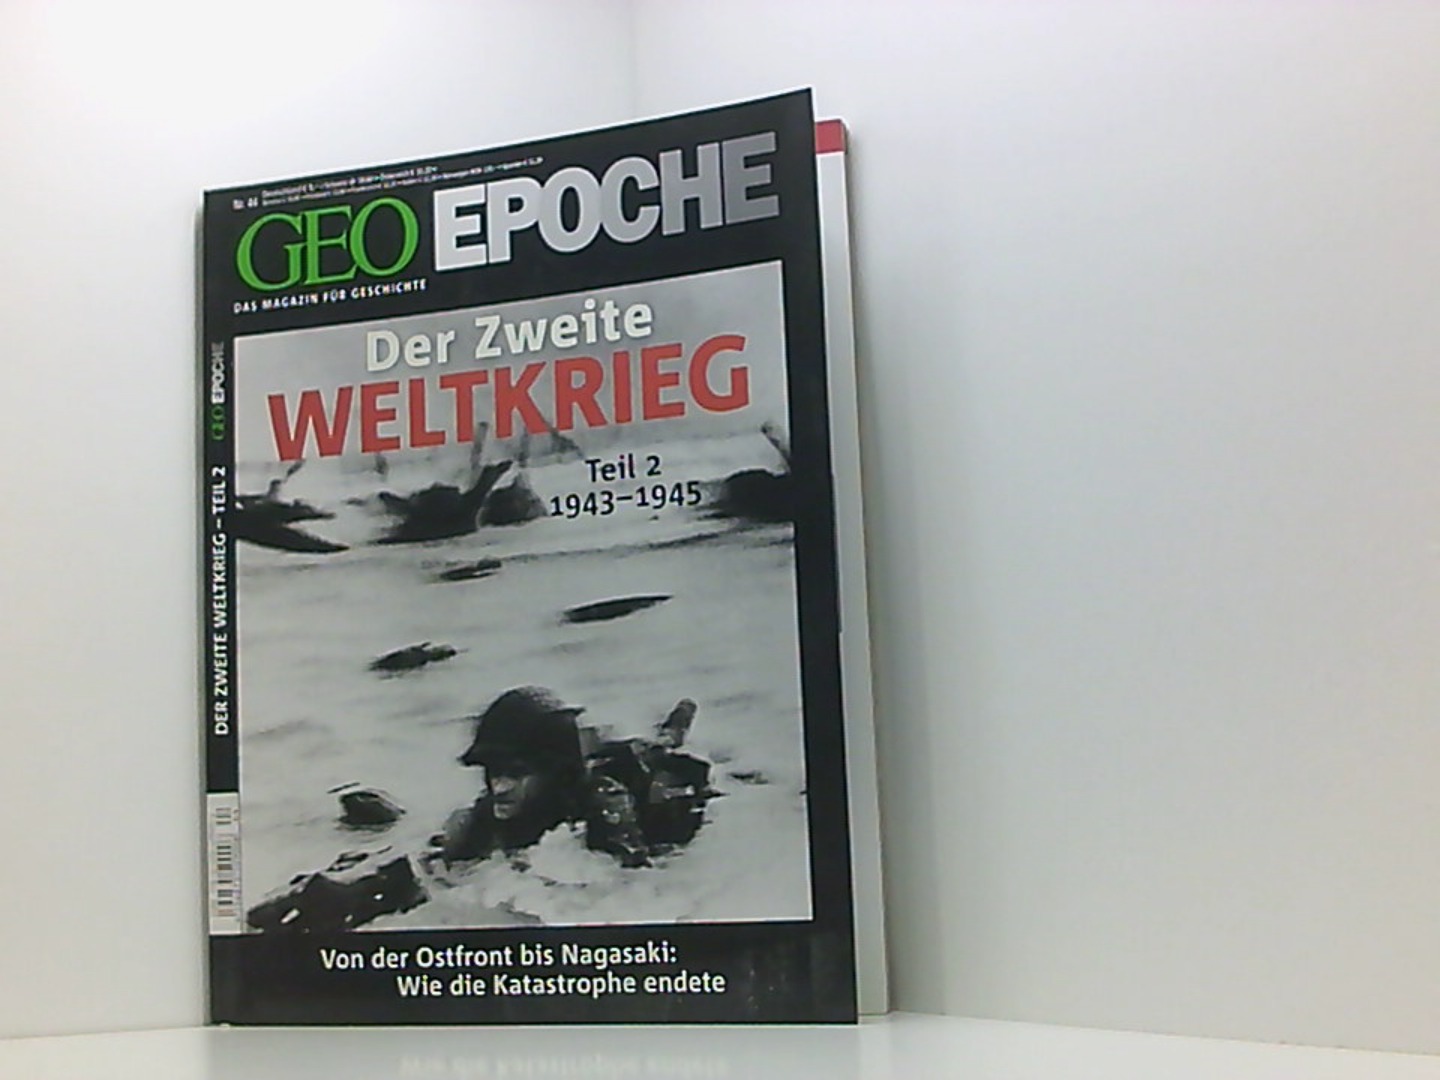 GEO-EPOCHE: Der Zweite Weltkrieg Teil 2: 1943-1945 - Michael, Schaper